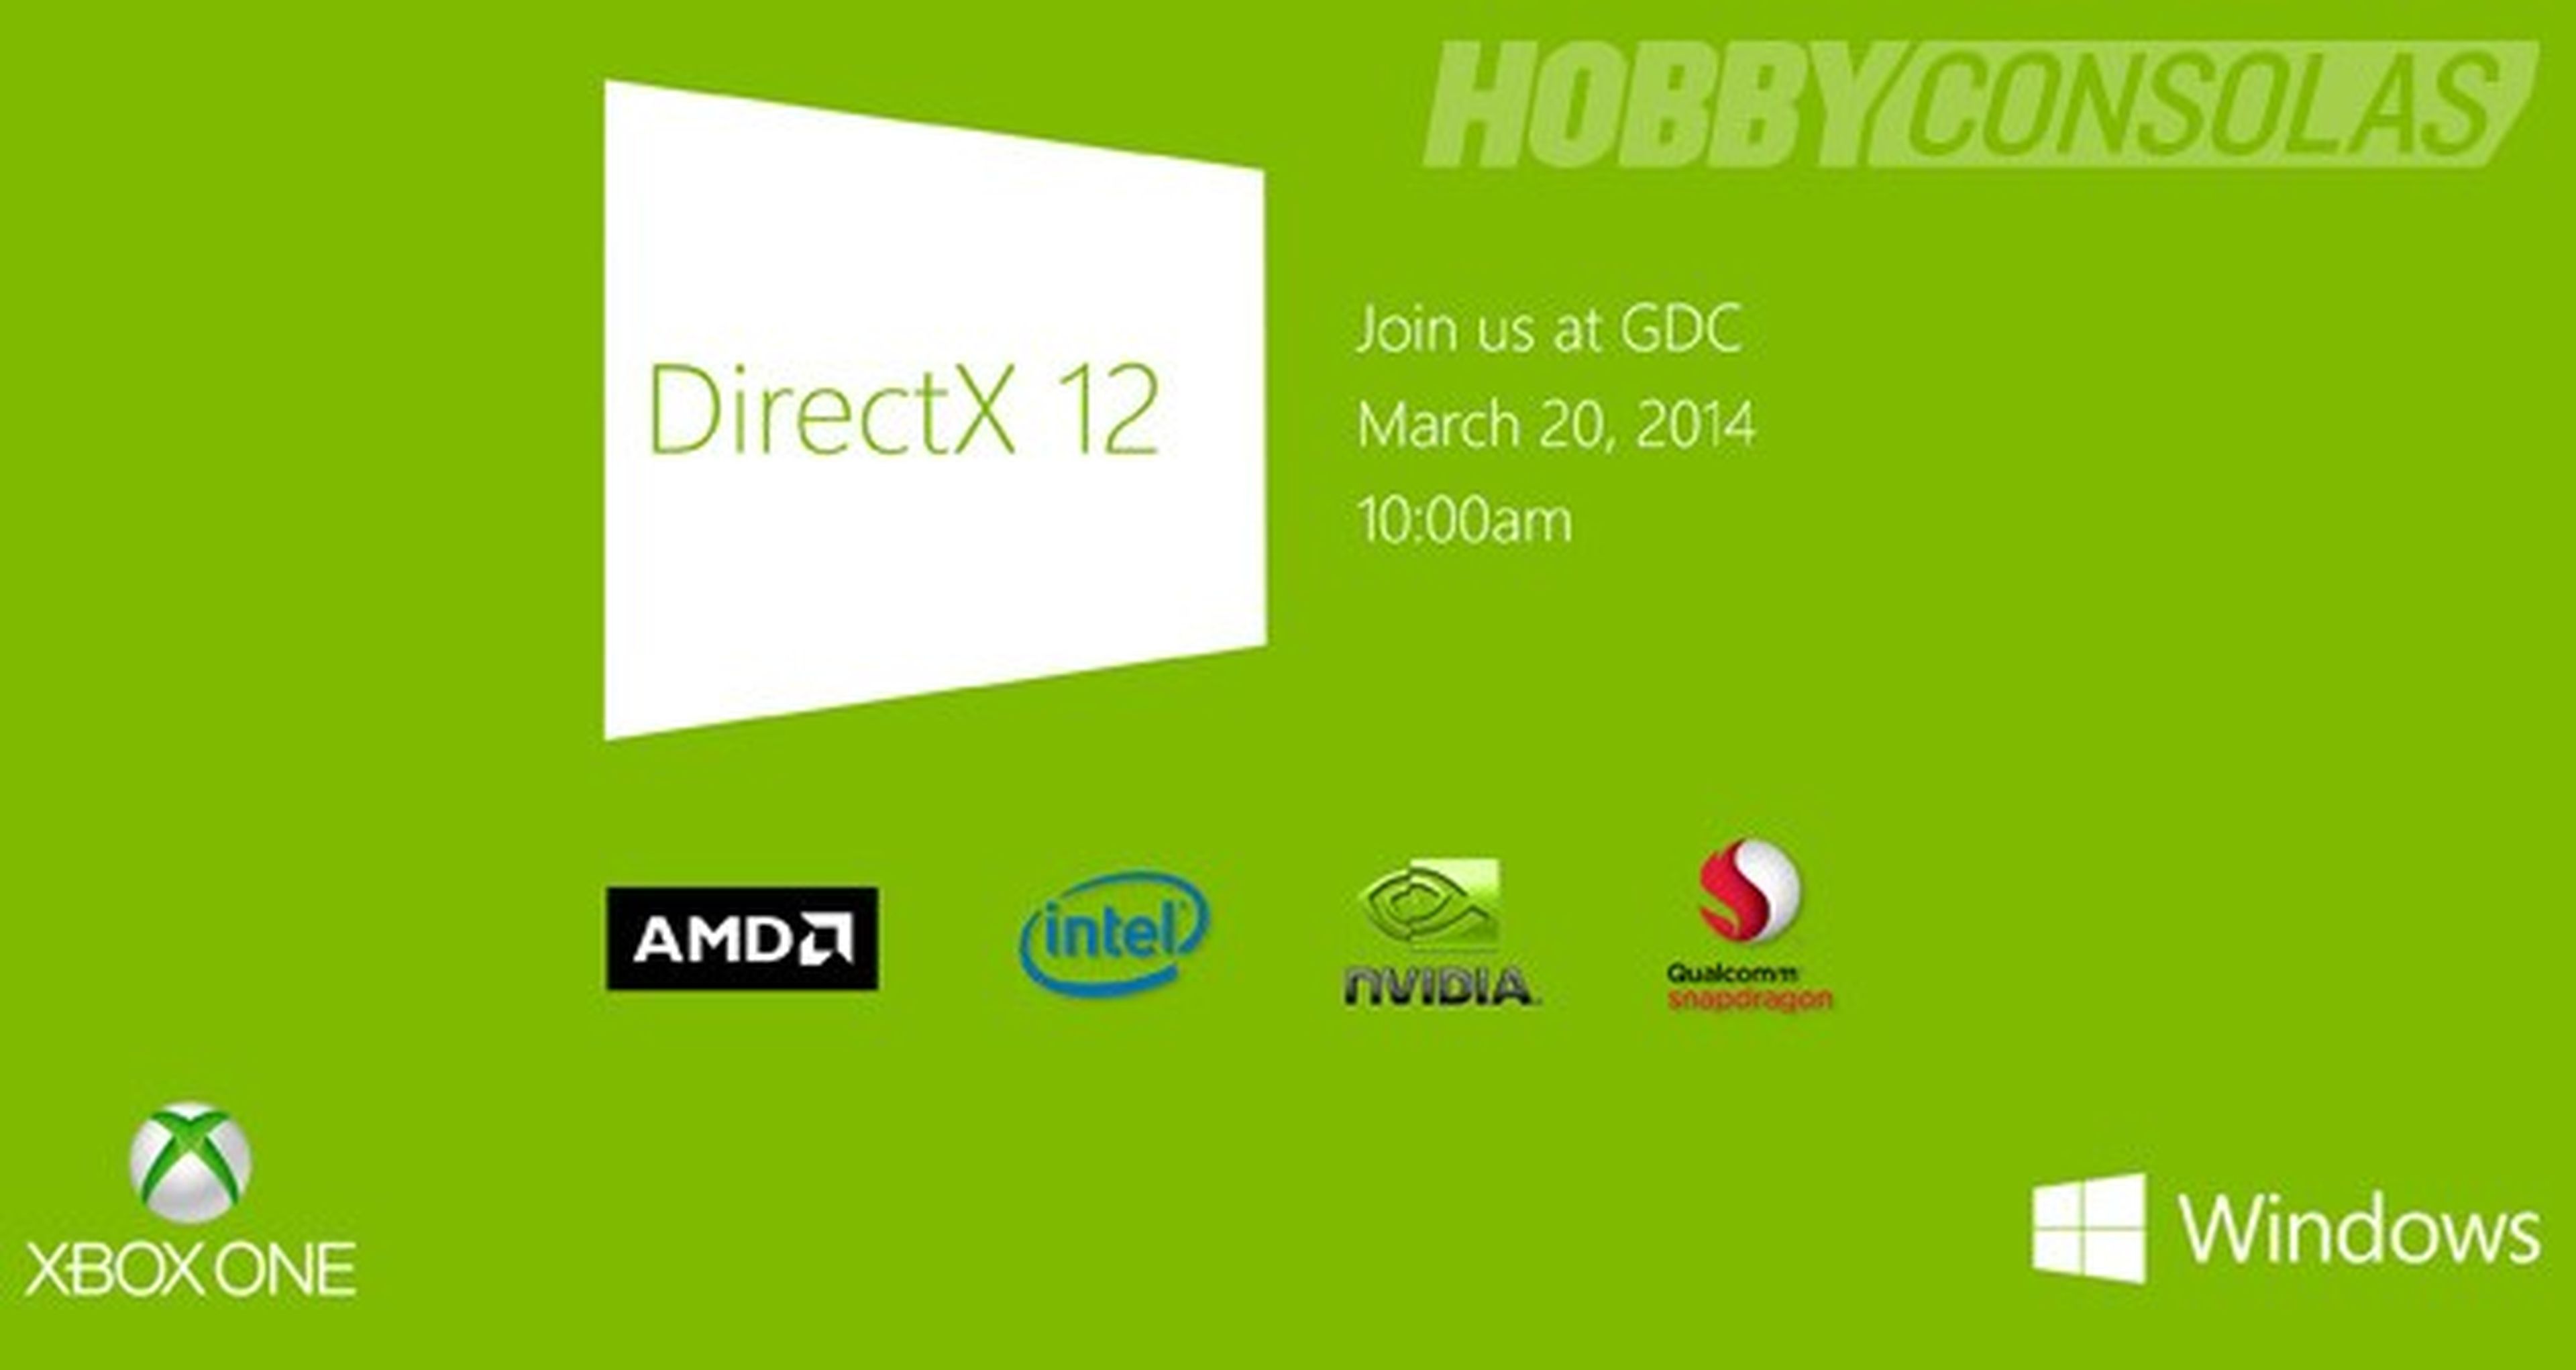 Xbox One a la conquista de Japón y de DirectX 12